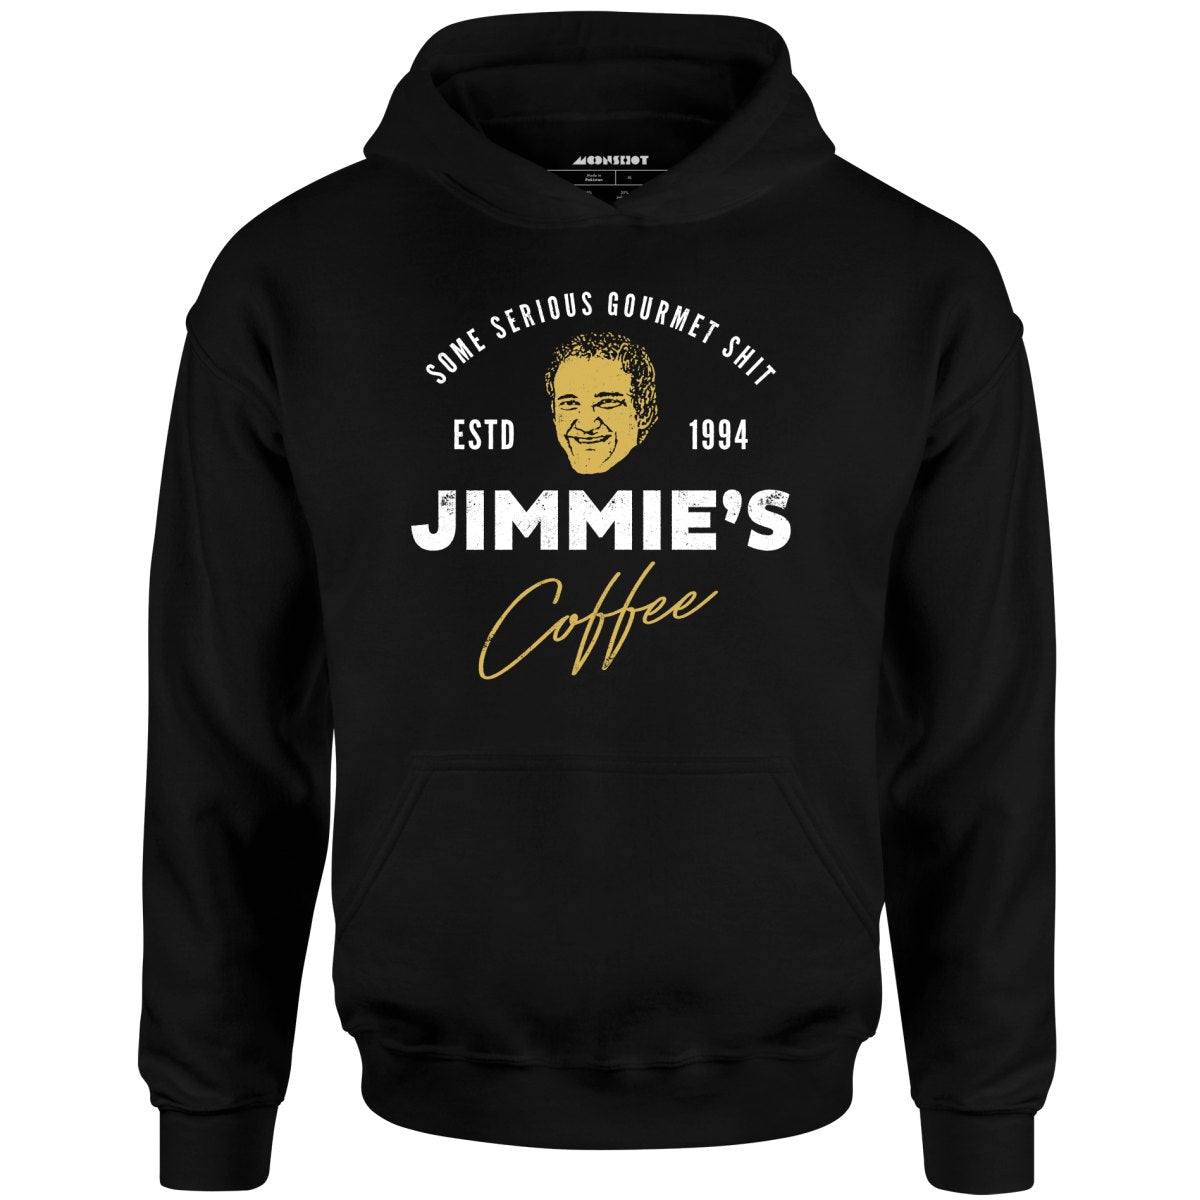 Jimmie's Coffee - Unisex Hoodie